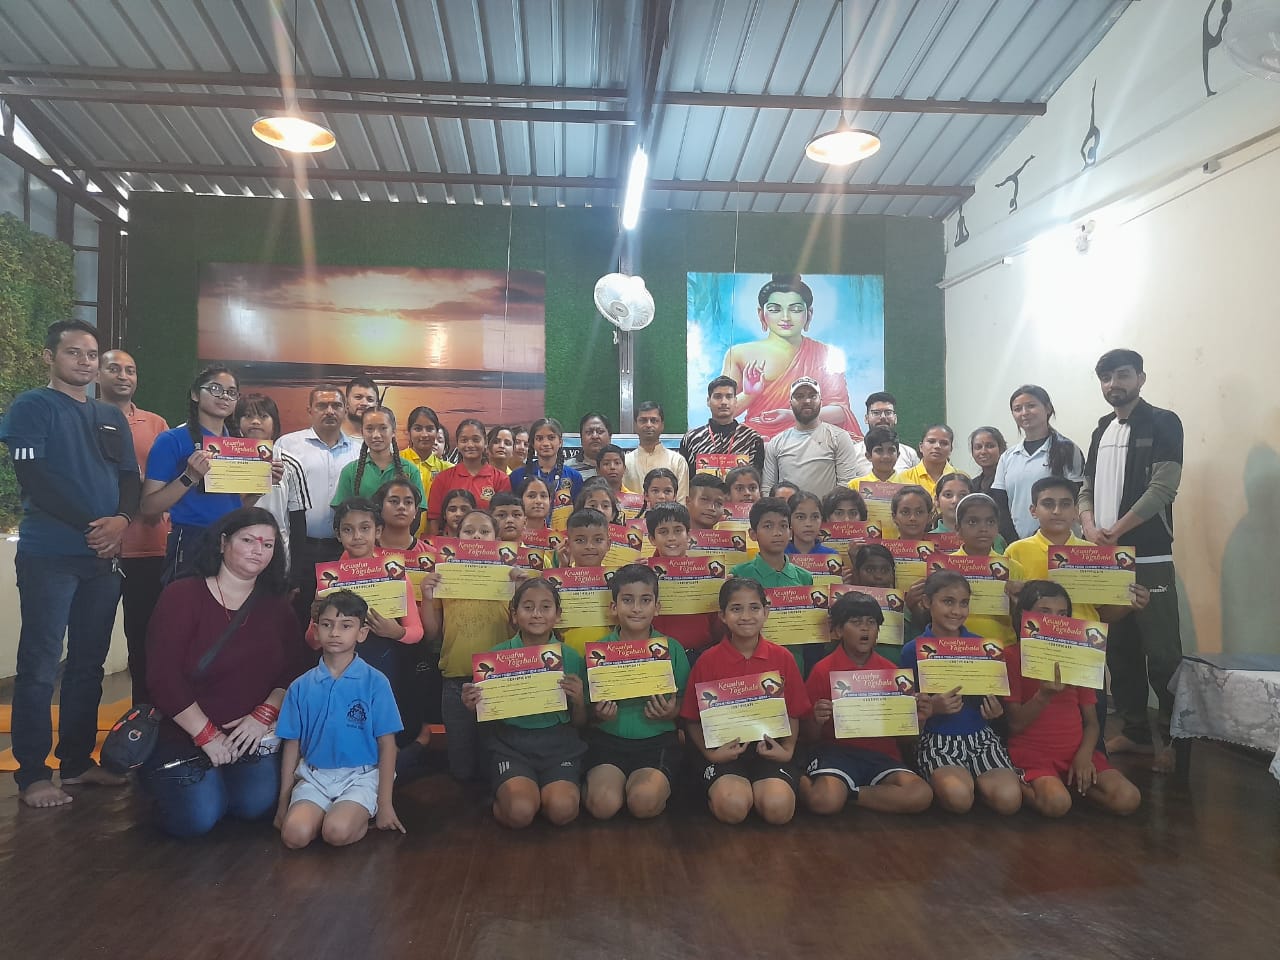 उत्‍तराखंड न्यूज़ : देहरादून कैवल्या योगशाला में आज 14 से 16 आयु वर्ग के लिए प्रतियोगिता का आयोजन किया गया